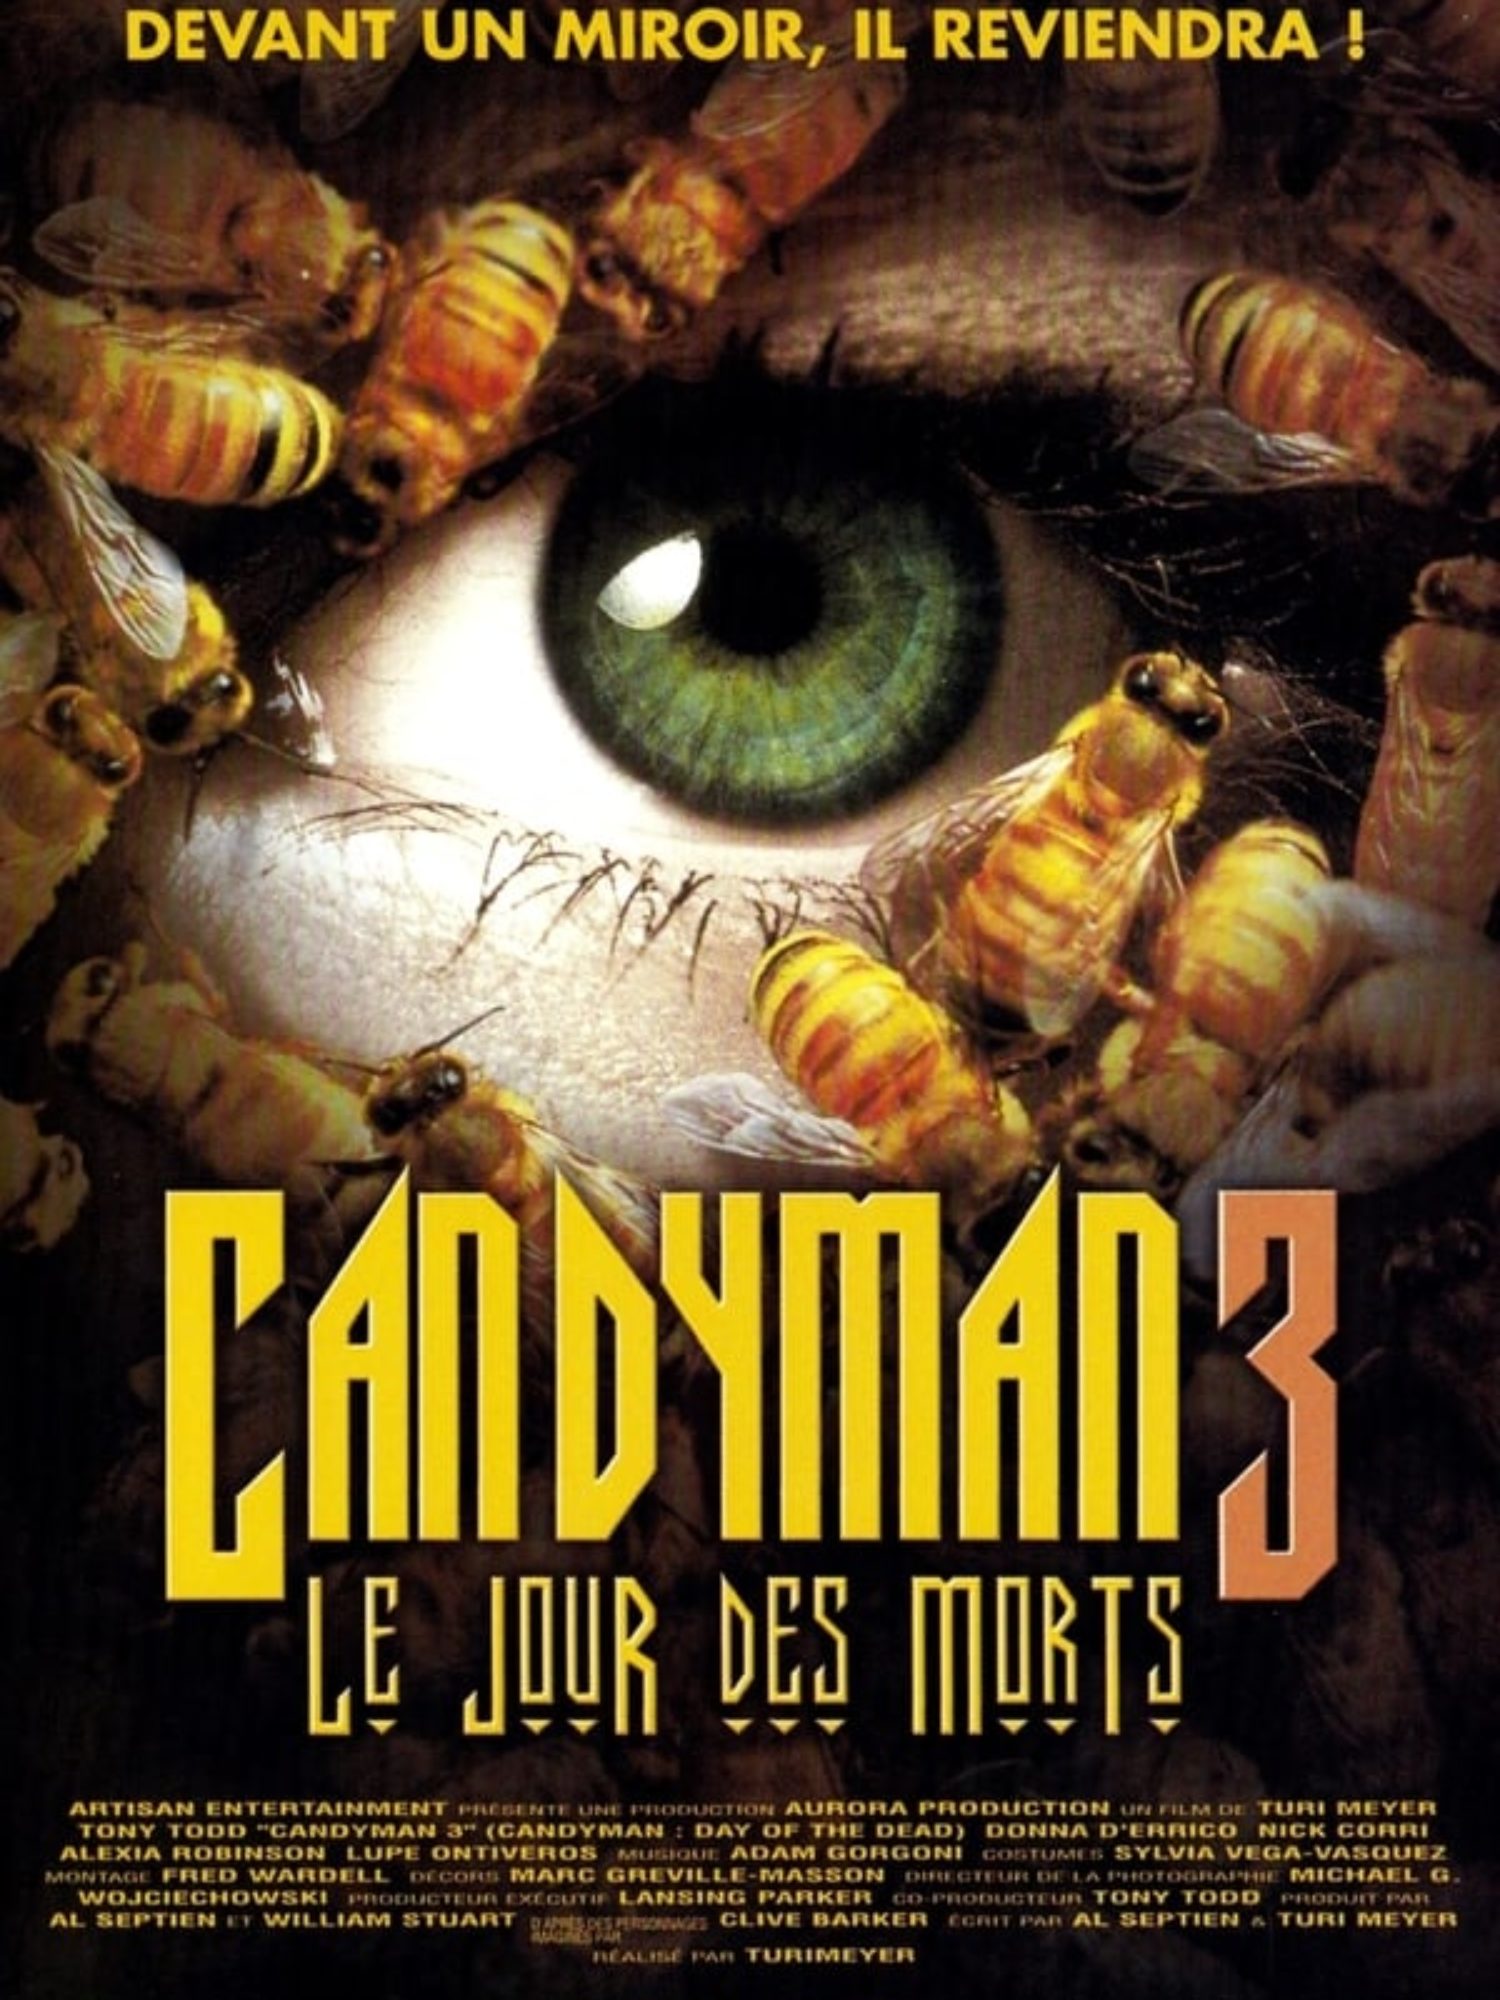 Candyman 3 – Le jour des morts